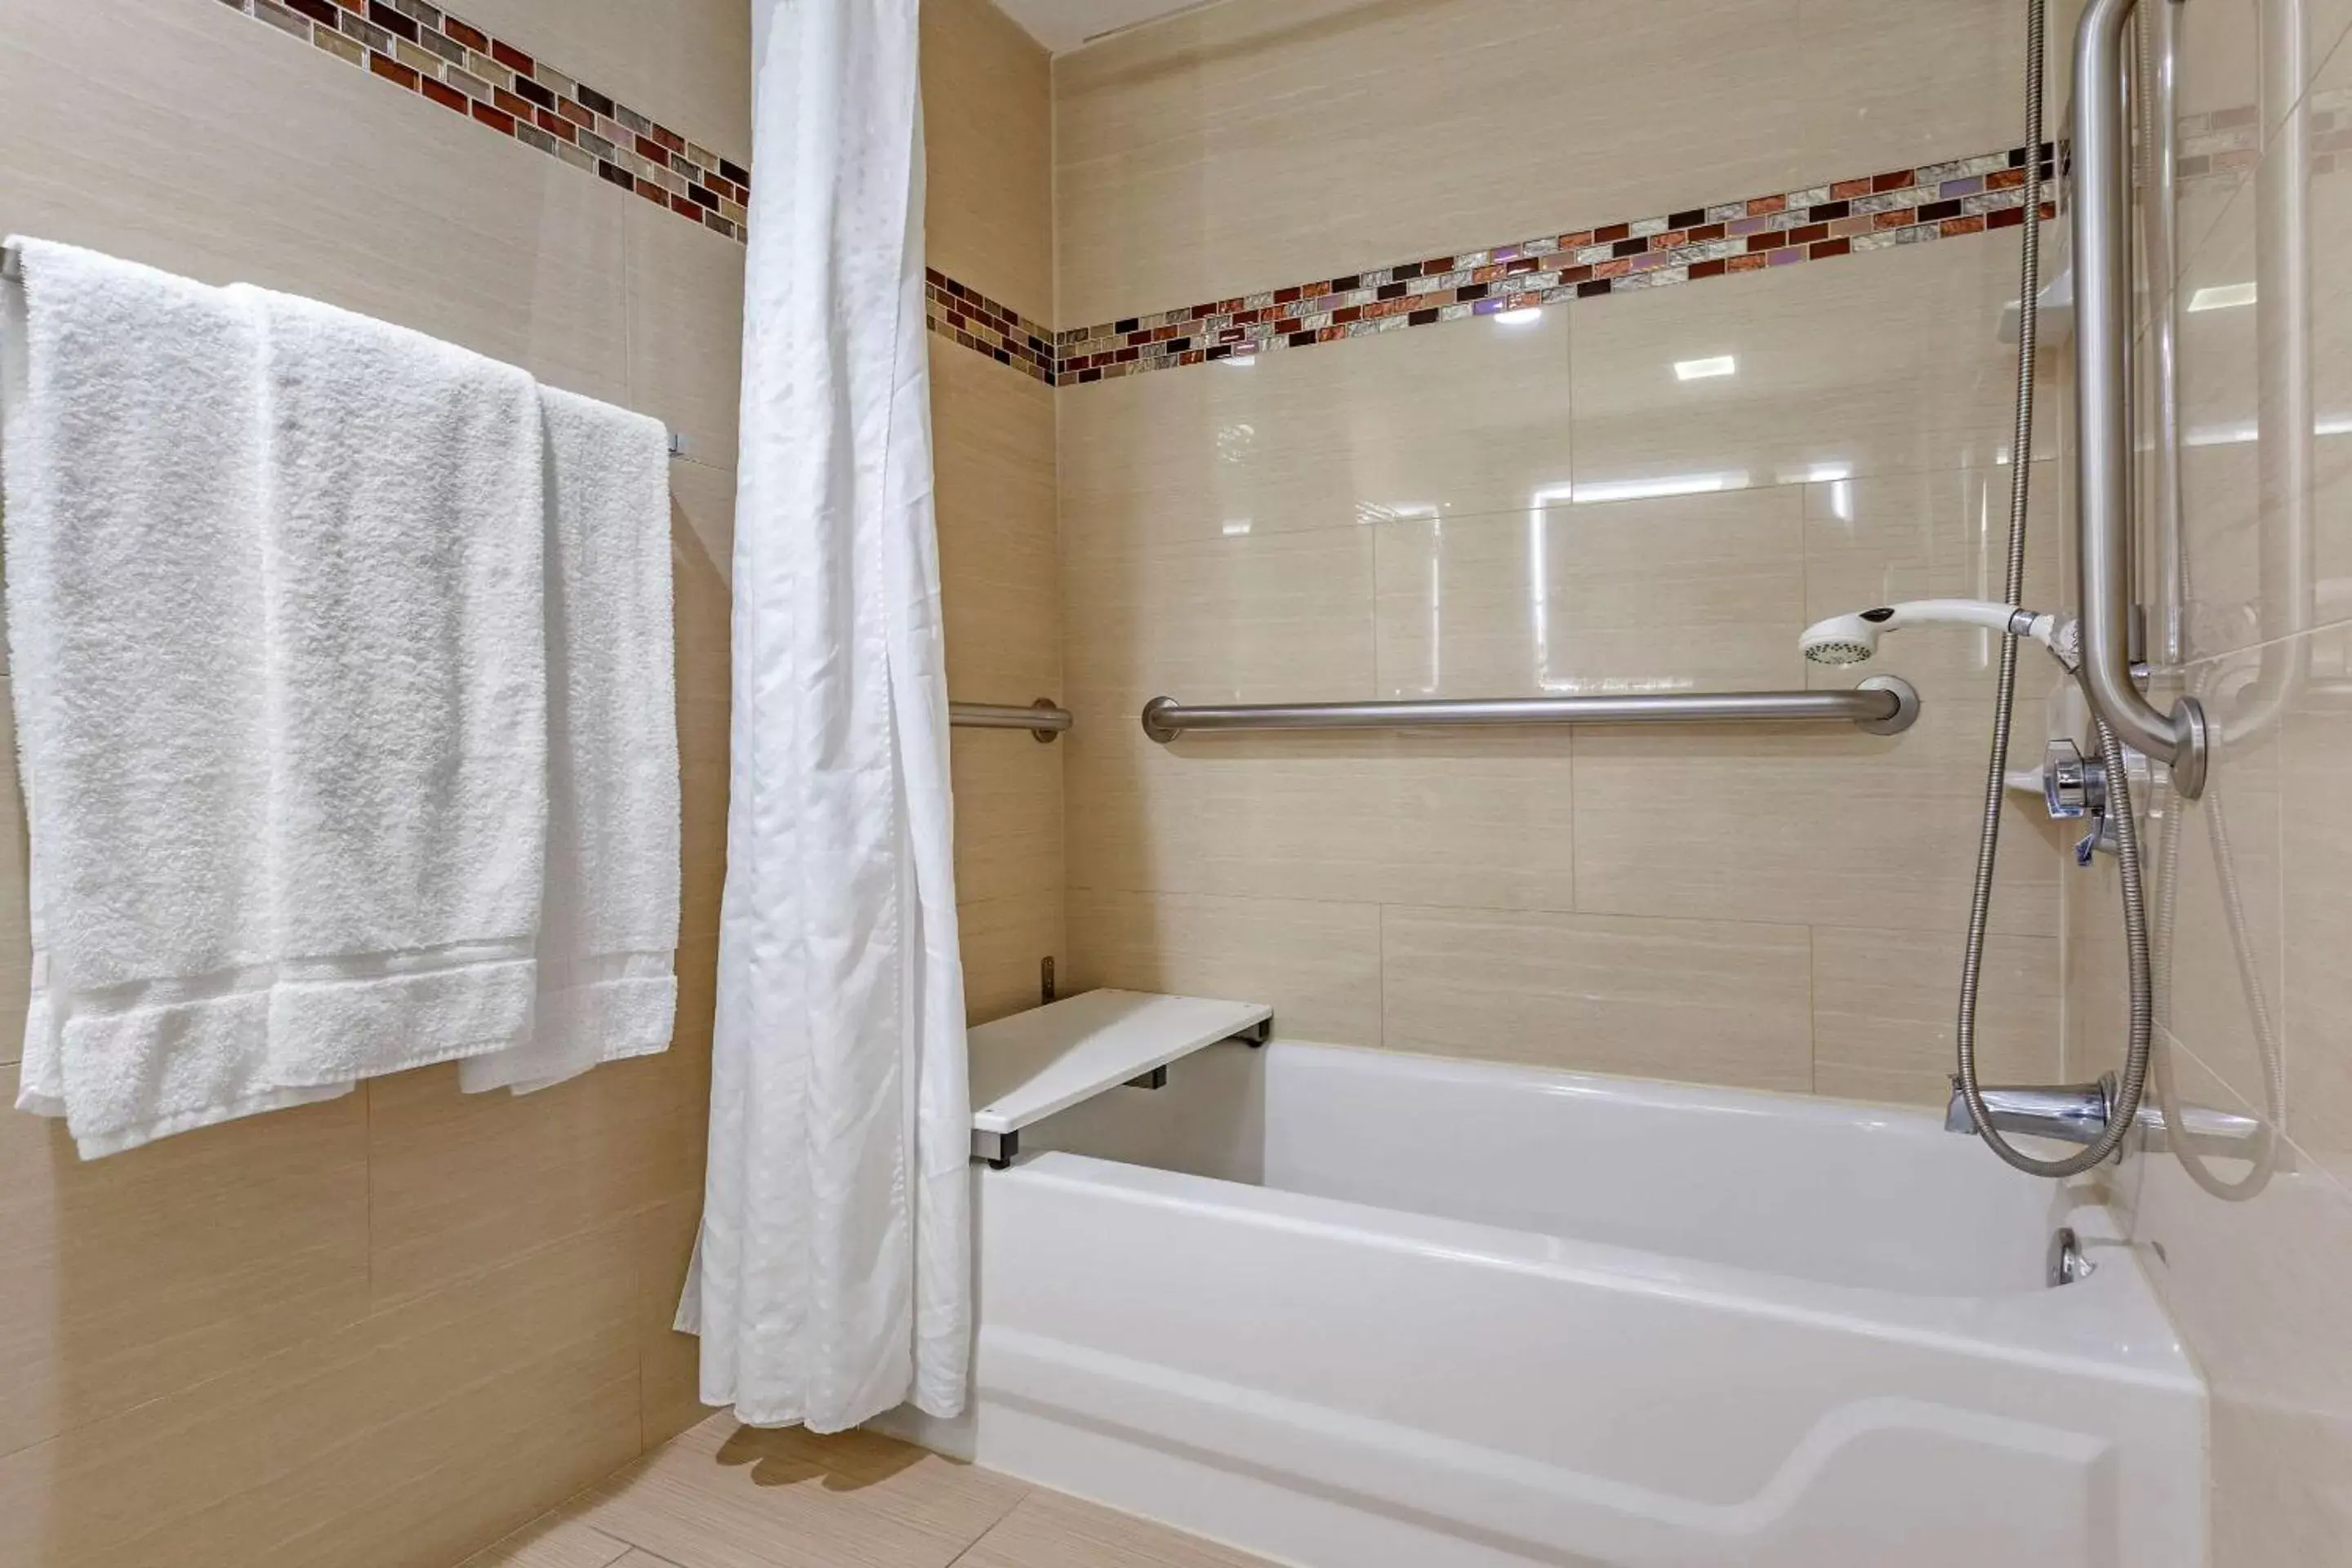 Bedroom, Bathroom in Comfort Inn & Suites Houston I-10 West Energy Corridor